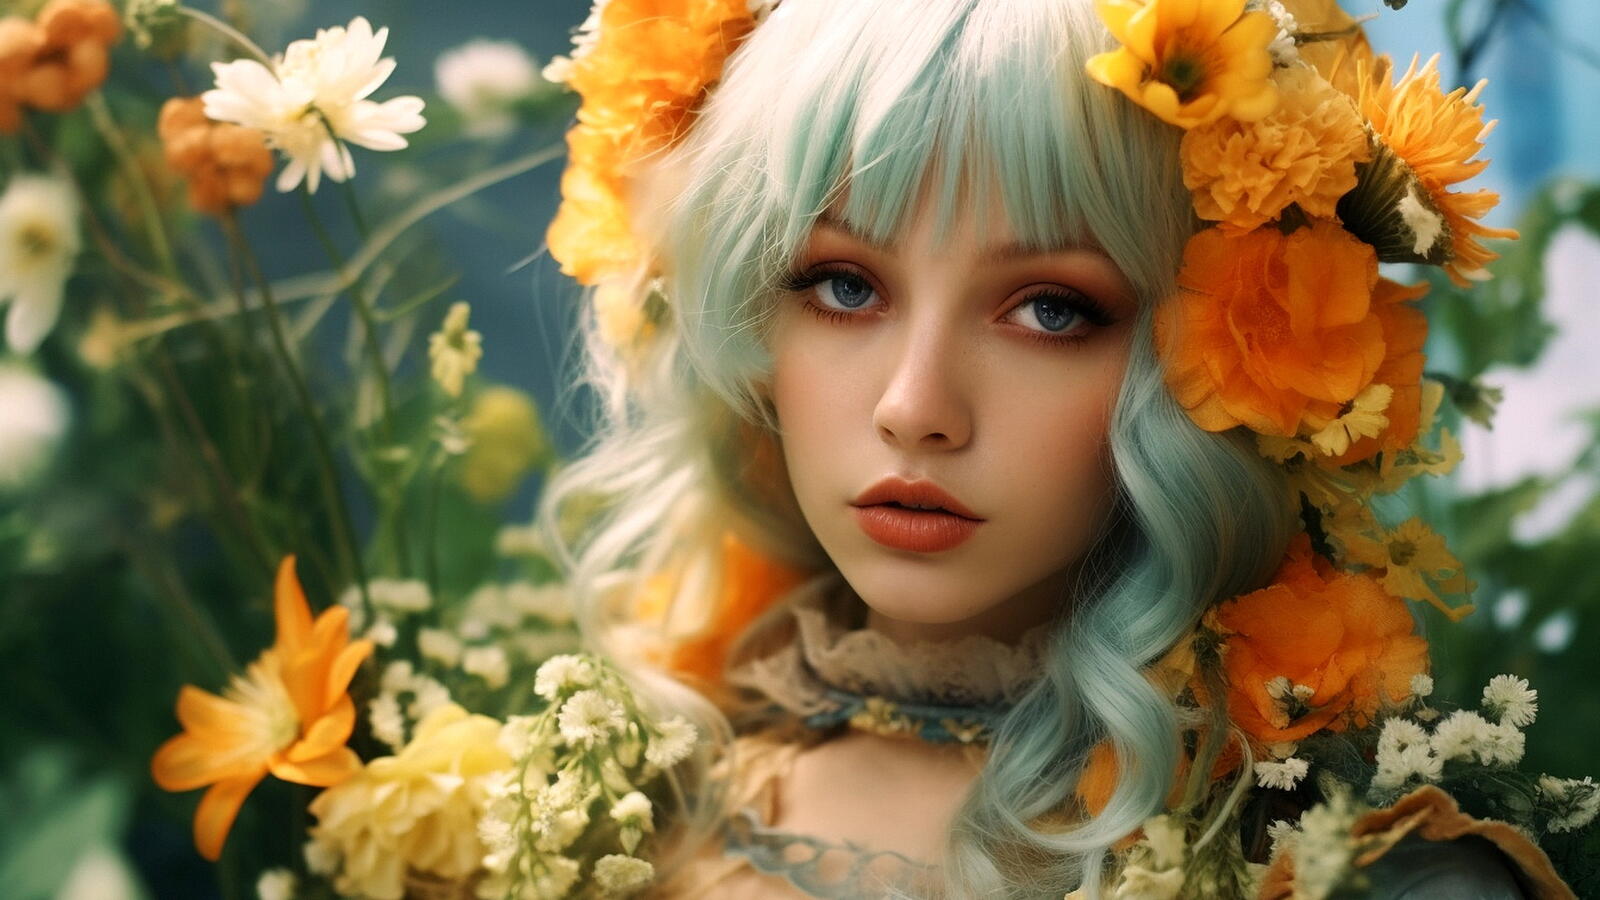 Бесплатное фото Портрет девушка блондинка и цветы